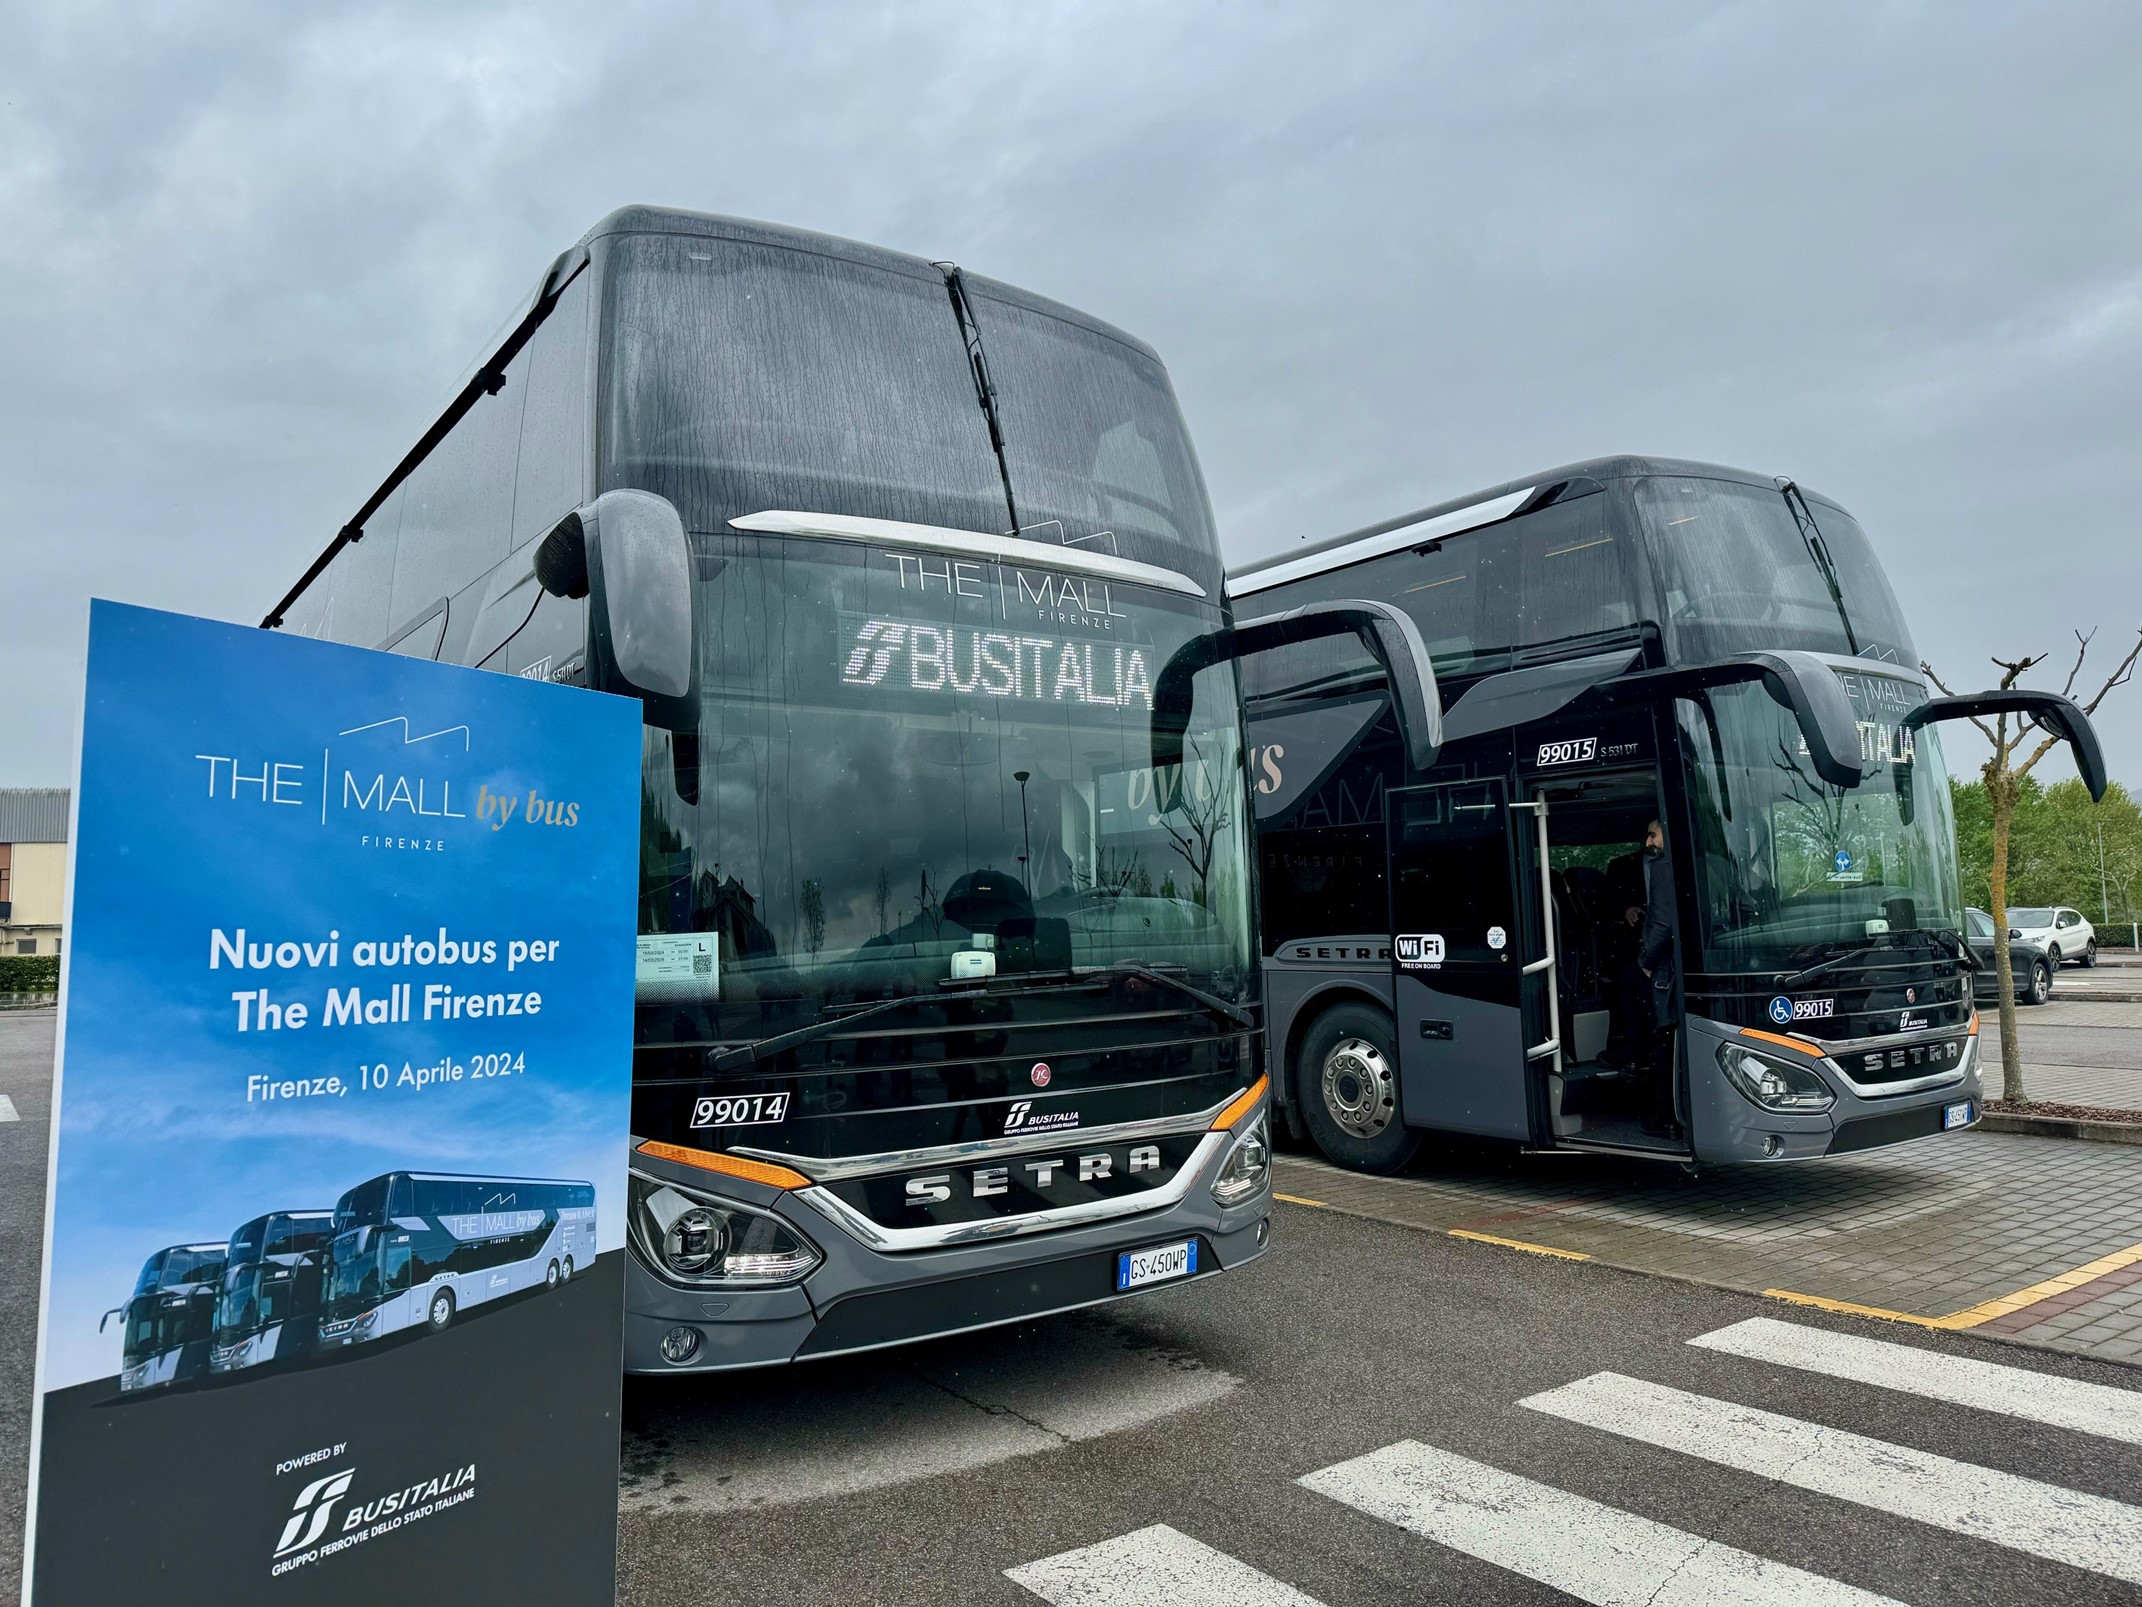 Tre nuovi autobus e vendita integrata dei biglietti per raggiungere The Mall (Fonte foto Trenitalia FS)